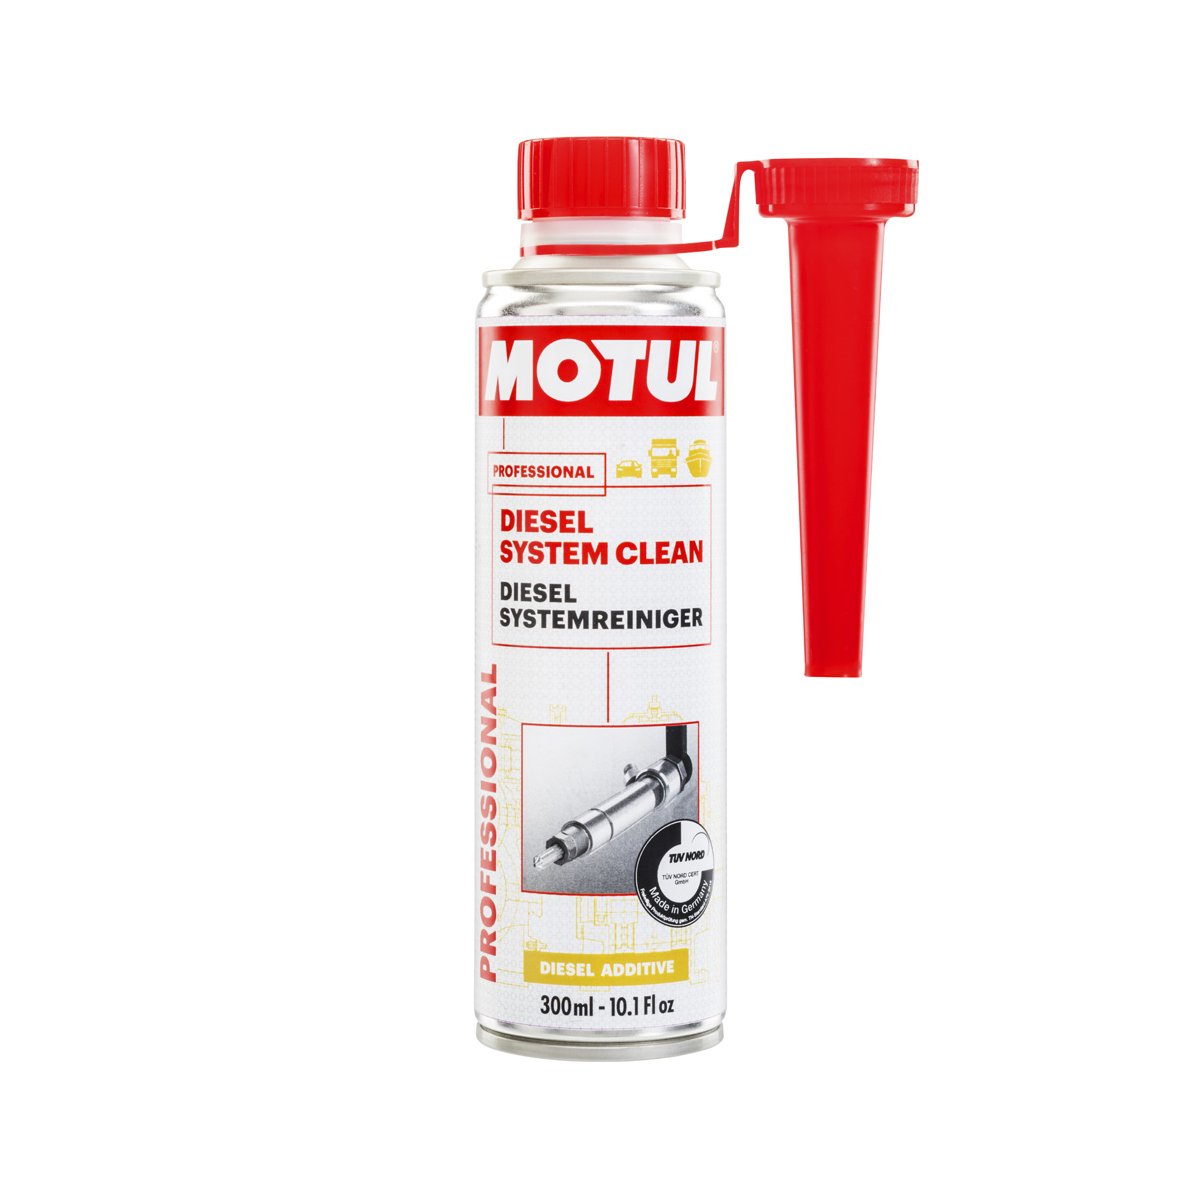 Nettoyant moteur Engine Clean Moto Motul moto : , additif  moteur de moto